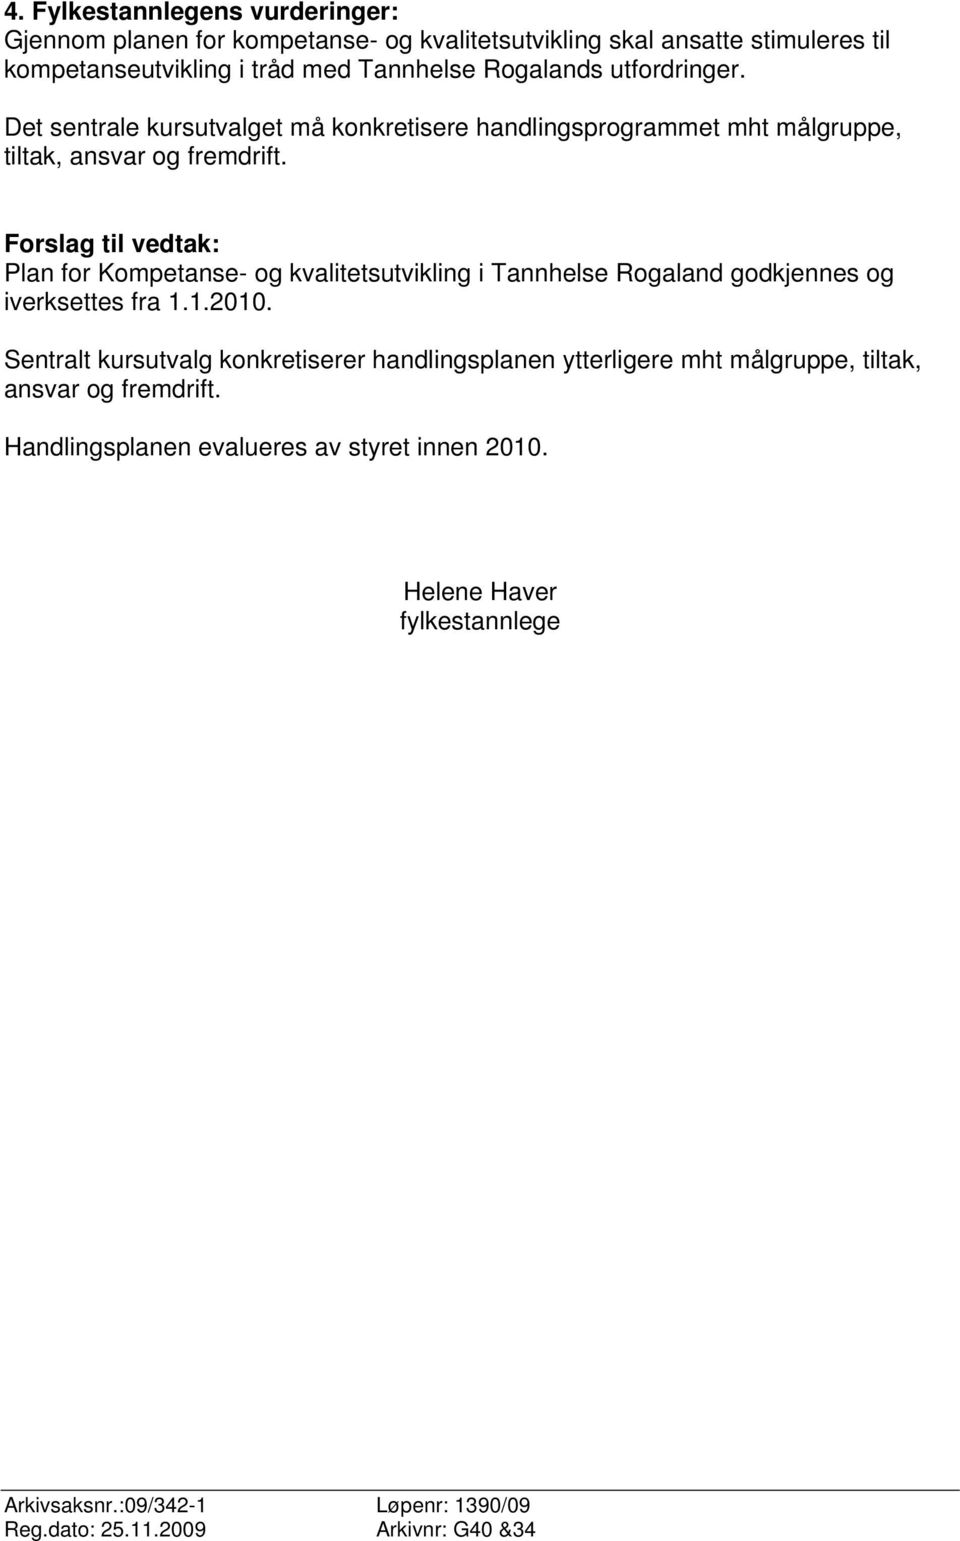 Forslag til vedtak: Plan for Kompetanse- og kvalitetsutvikling i Tannhelse Rogaland godkjennes og iverksettes fra 1.1.2010.